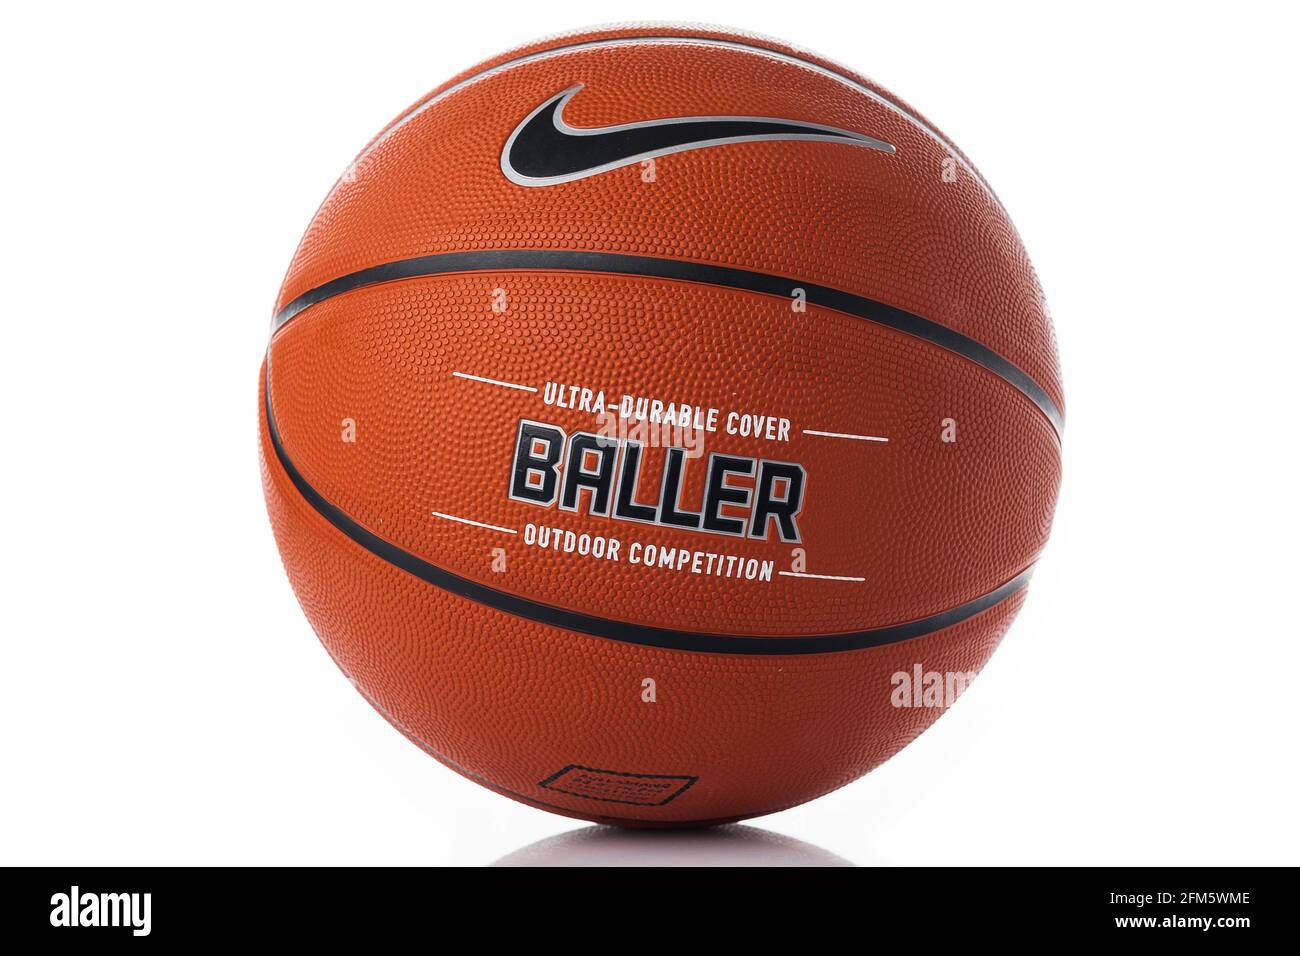 Marque Nike, ballon de basket-ball Nike Baller. Ballon d'extérieur en  caoutchouc orange, housse ultra-résistante, gros plan sur un fond blanc  Photo Stock - Alamy